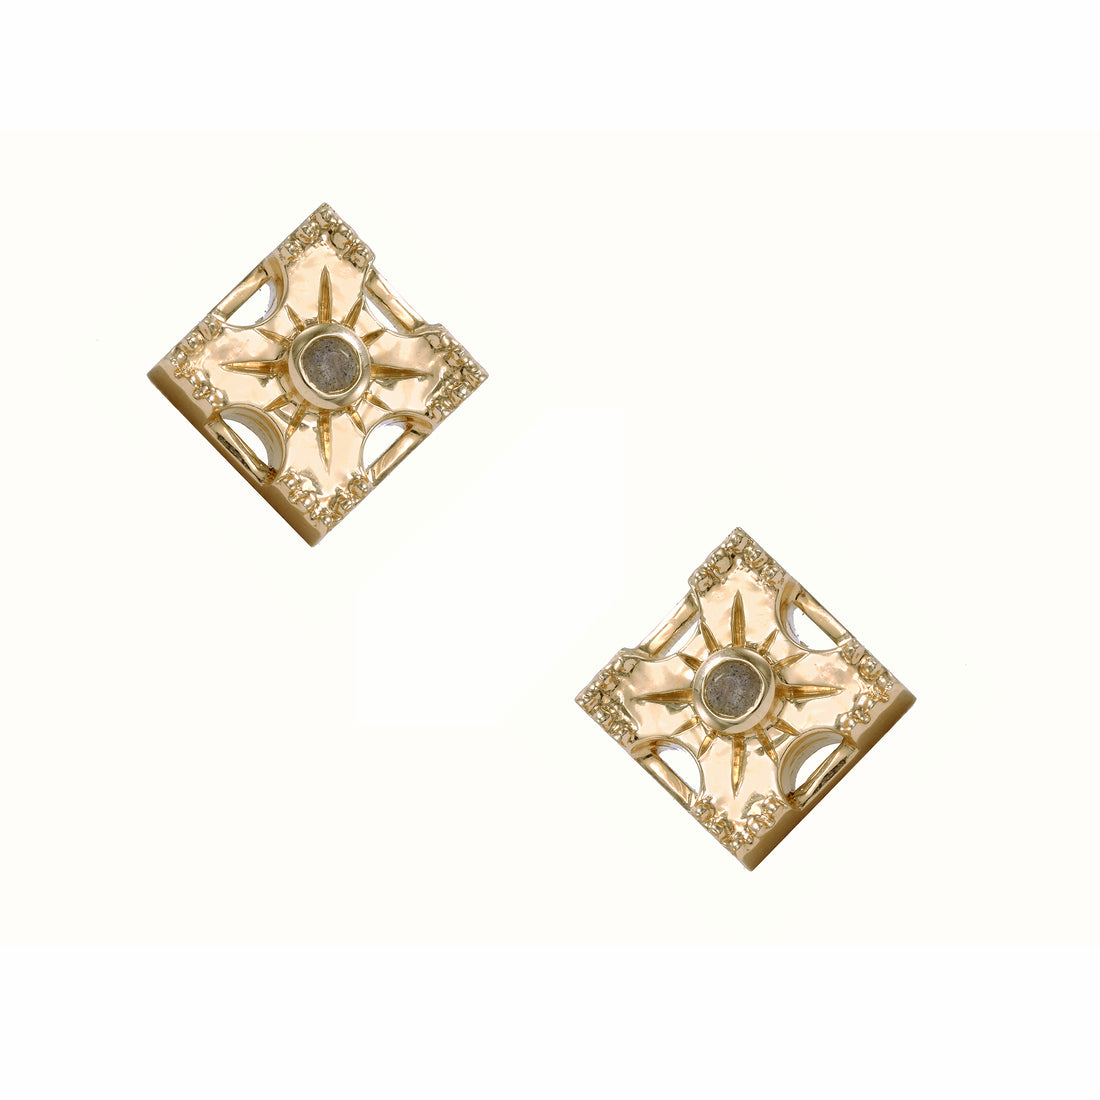 Stud earrings Louis Vuitton - Gem